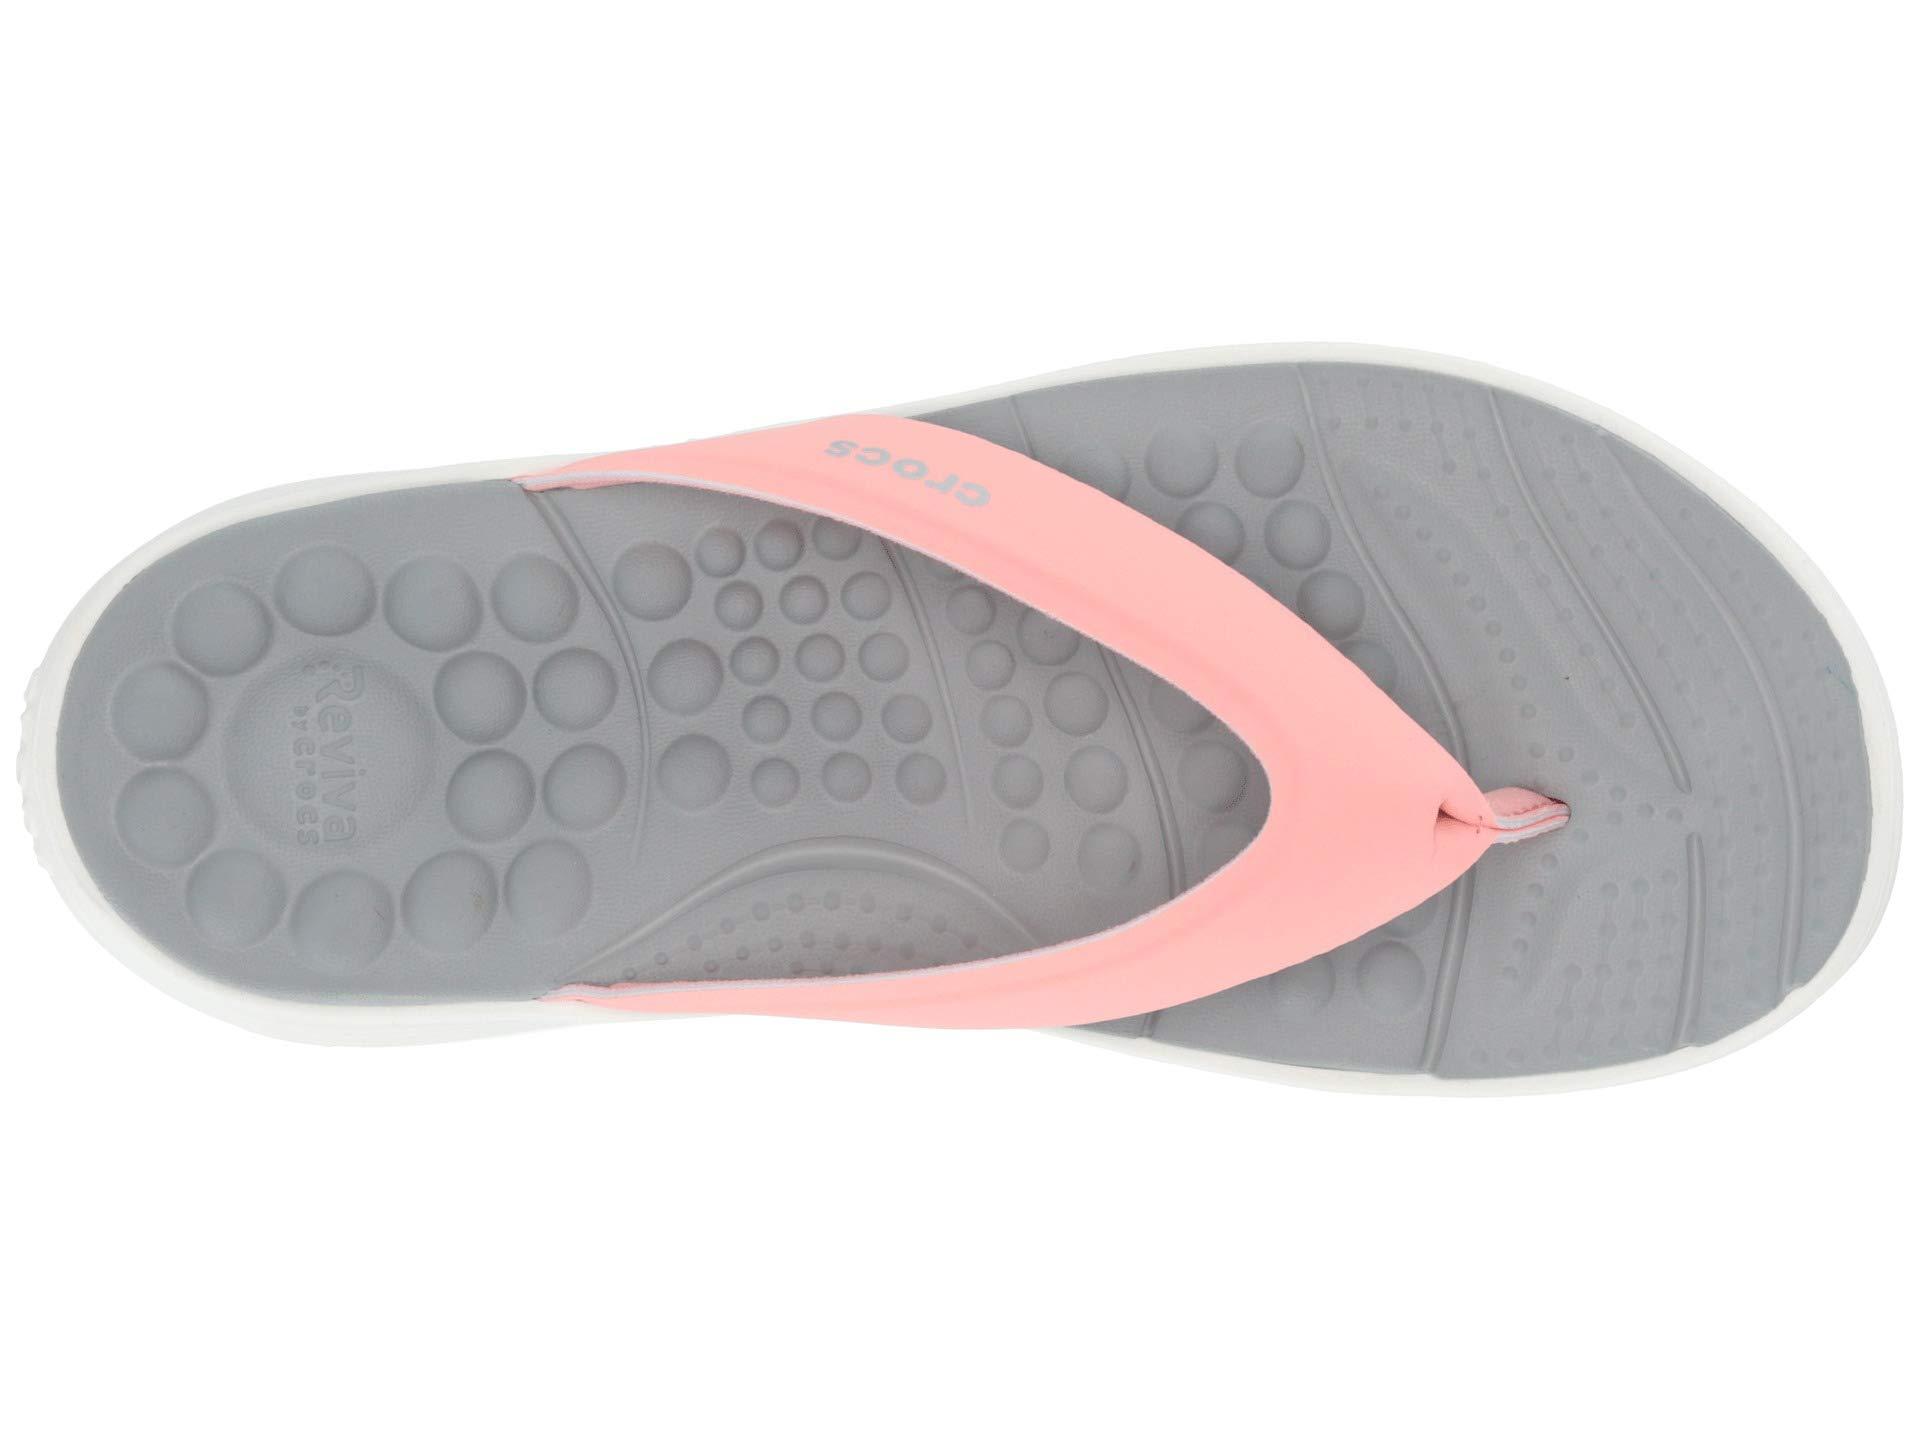 crocs women's reviva flip flop